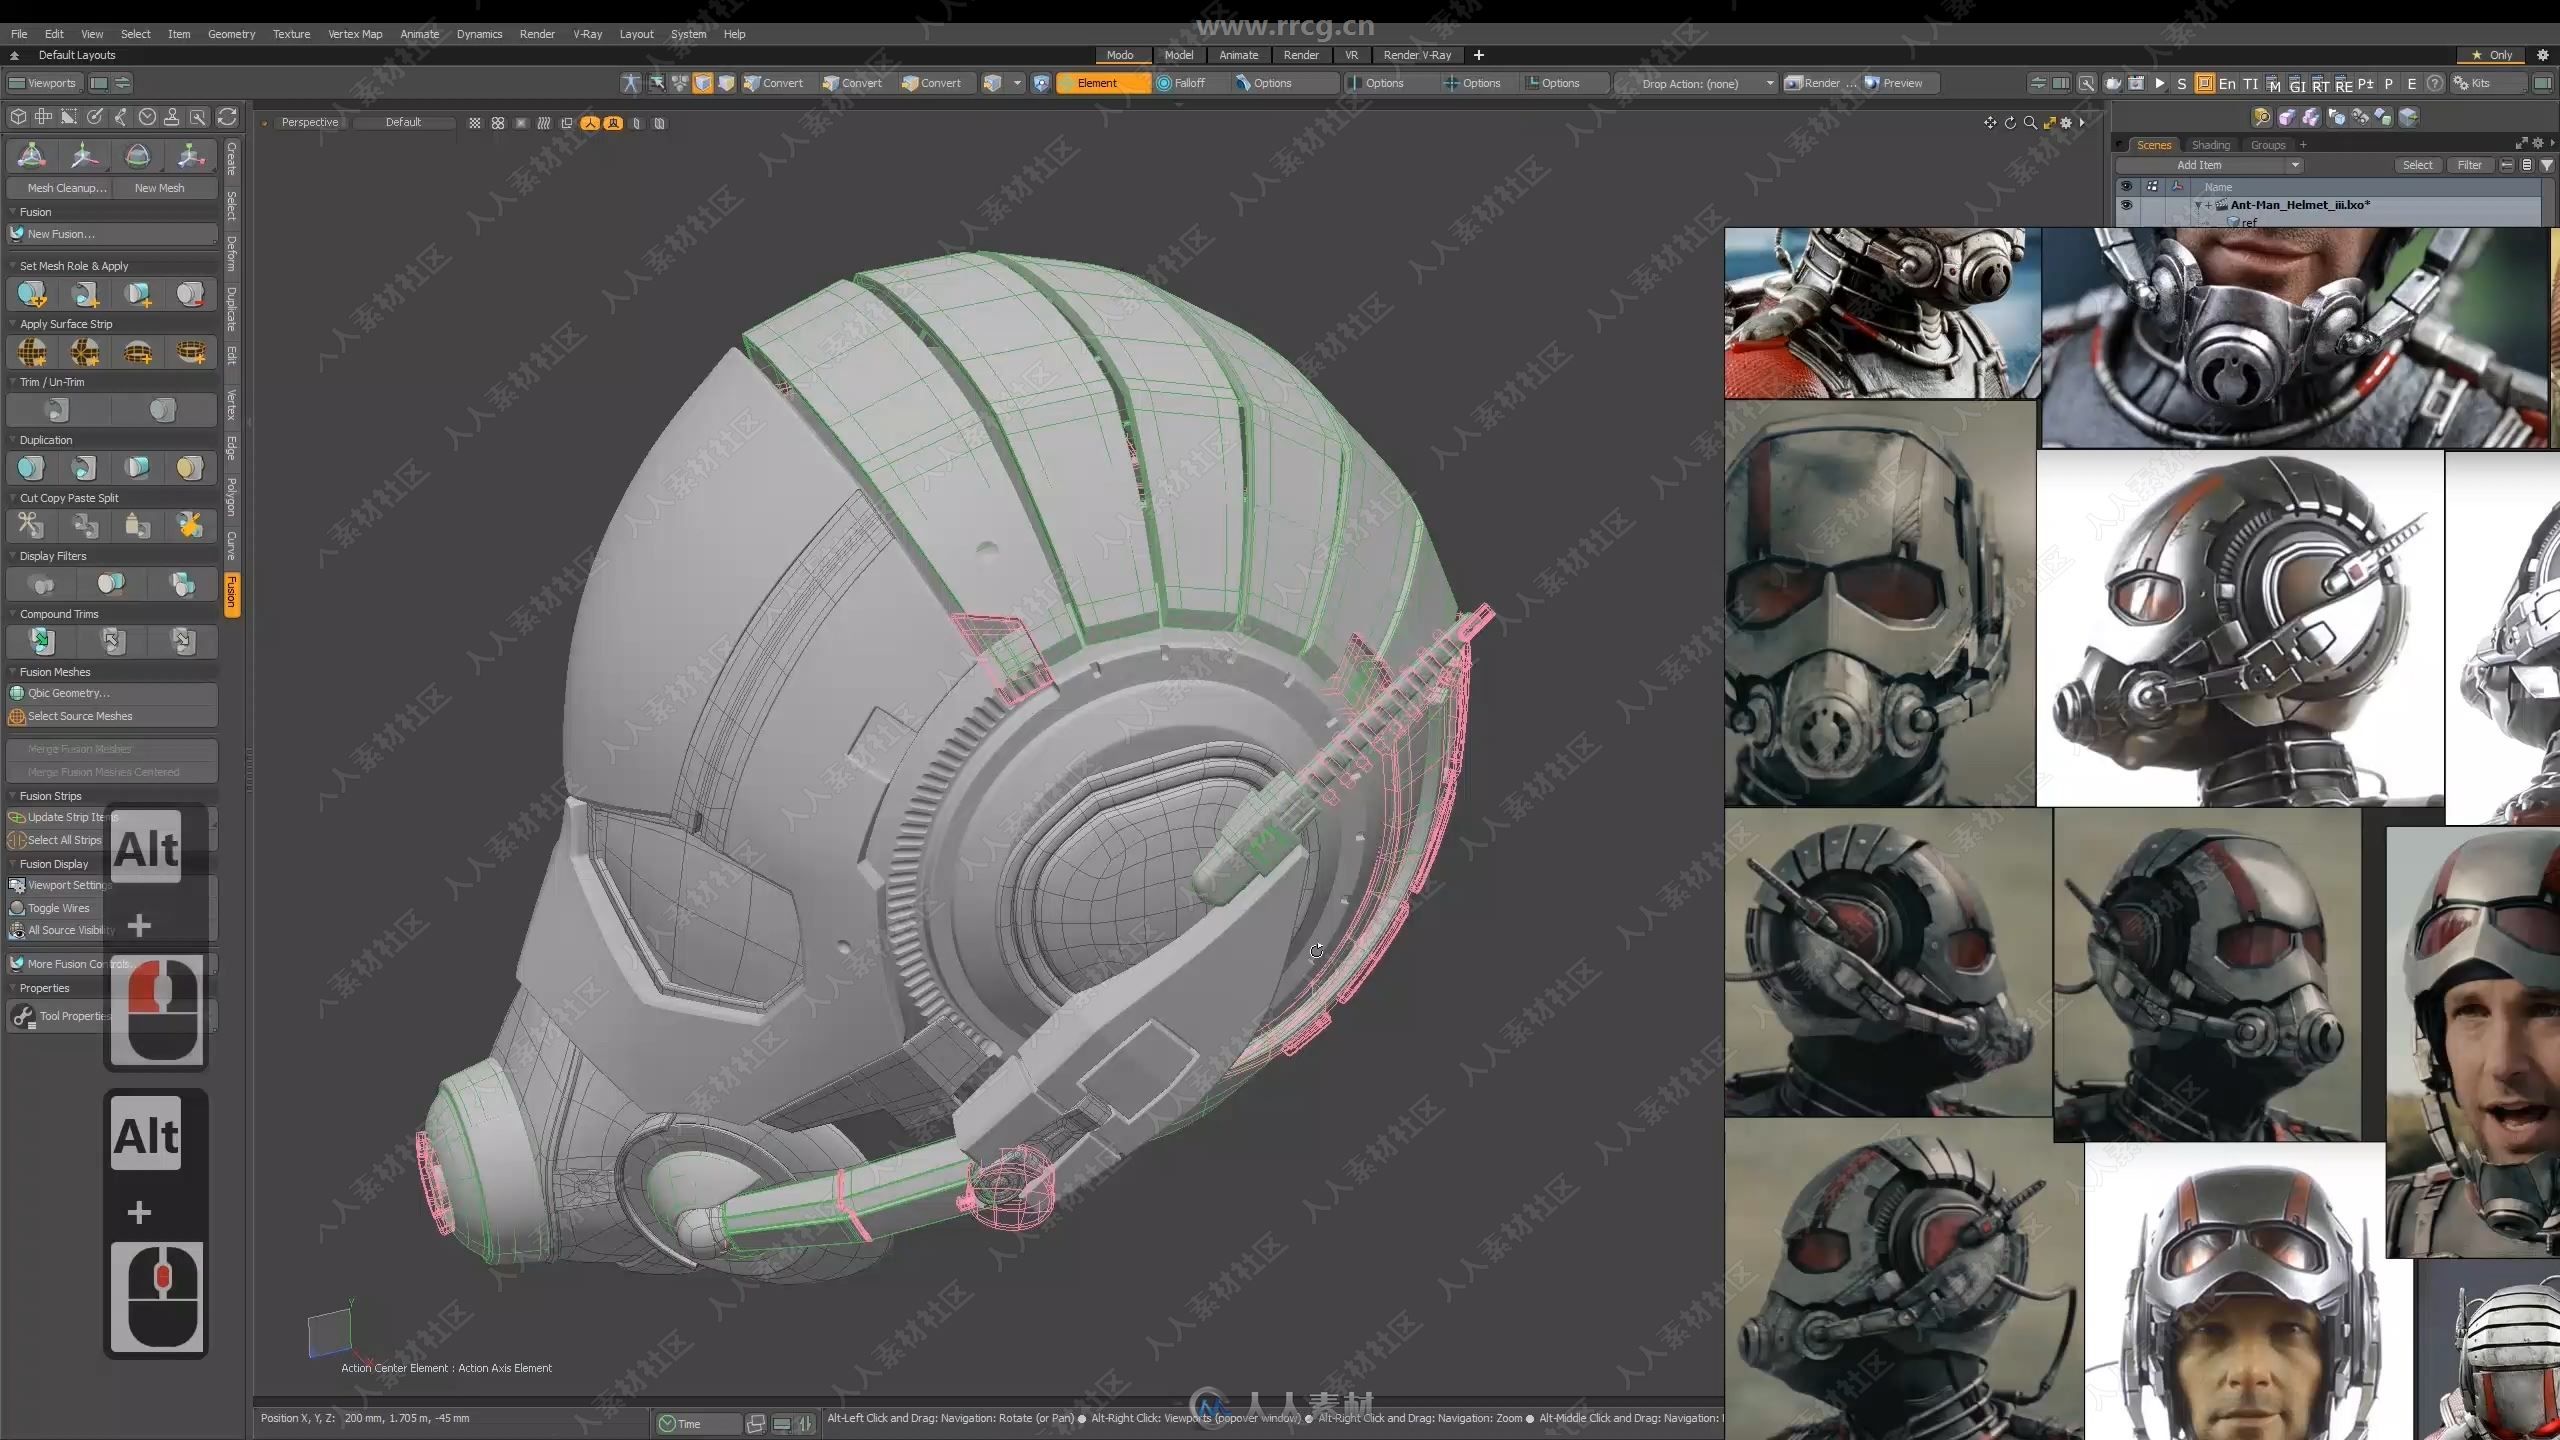 Modo超精细蚁人头盔3D建模制作视频教程